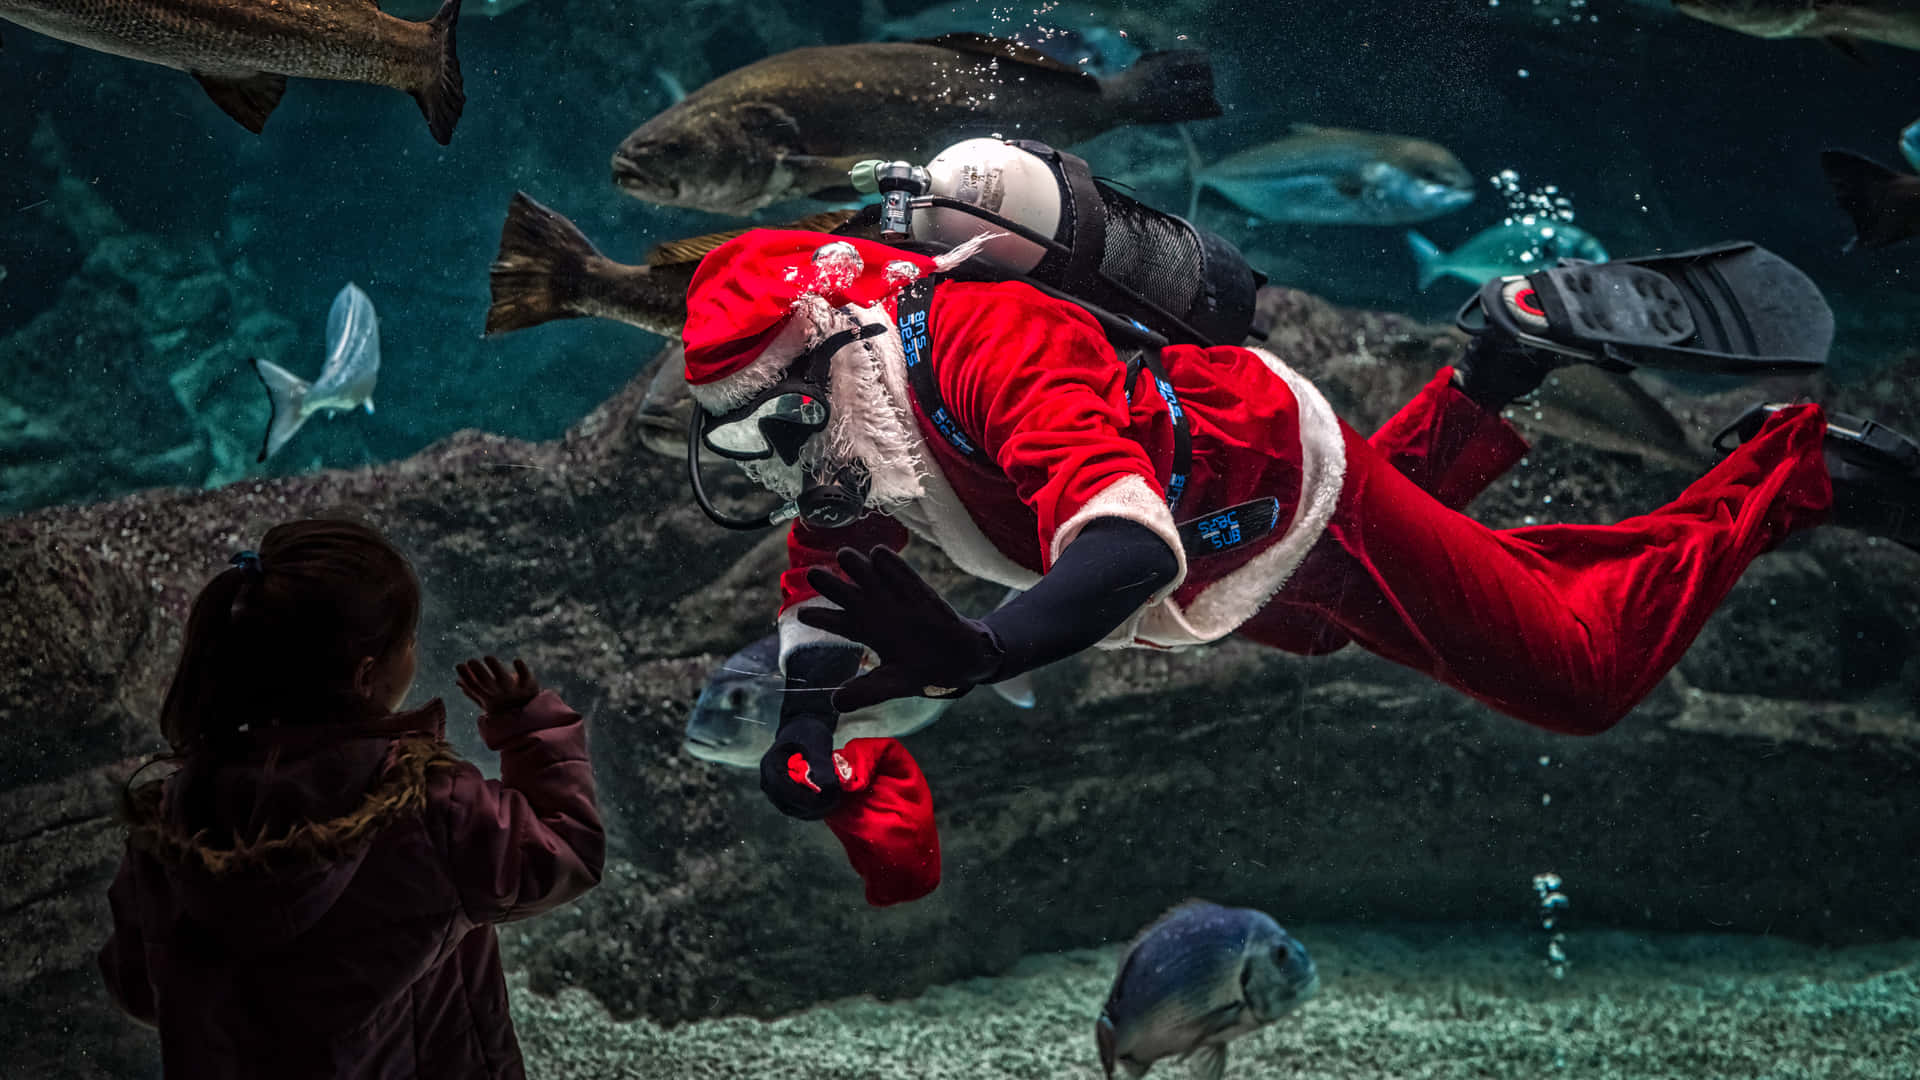 Santa Claus billeder galop gennem dette sjove og livlige tapet.